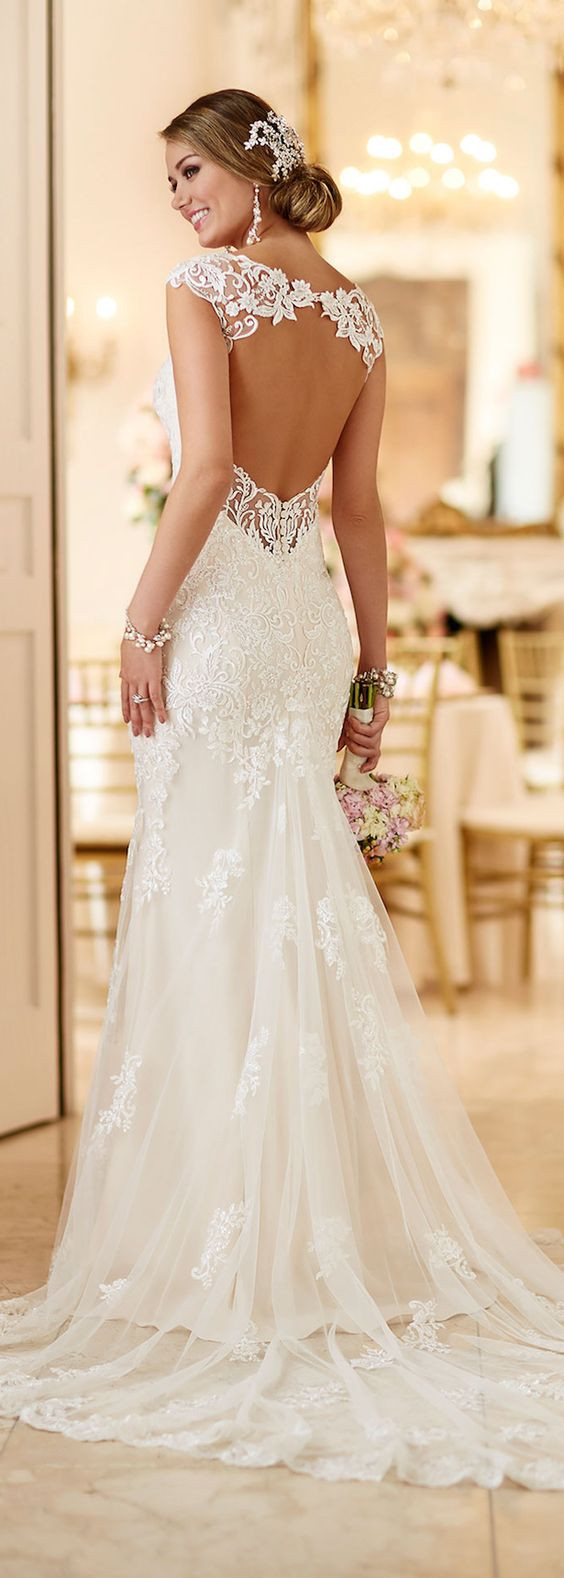 Lace Wedding Gowns Pinterest
 Los 15 vestidos de novias más vistos en Pinterest KENA